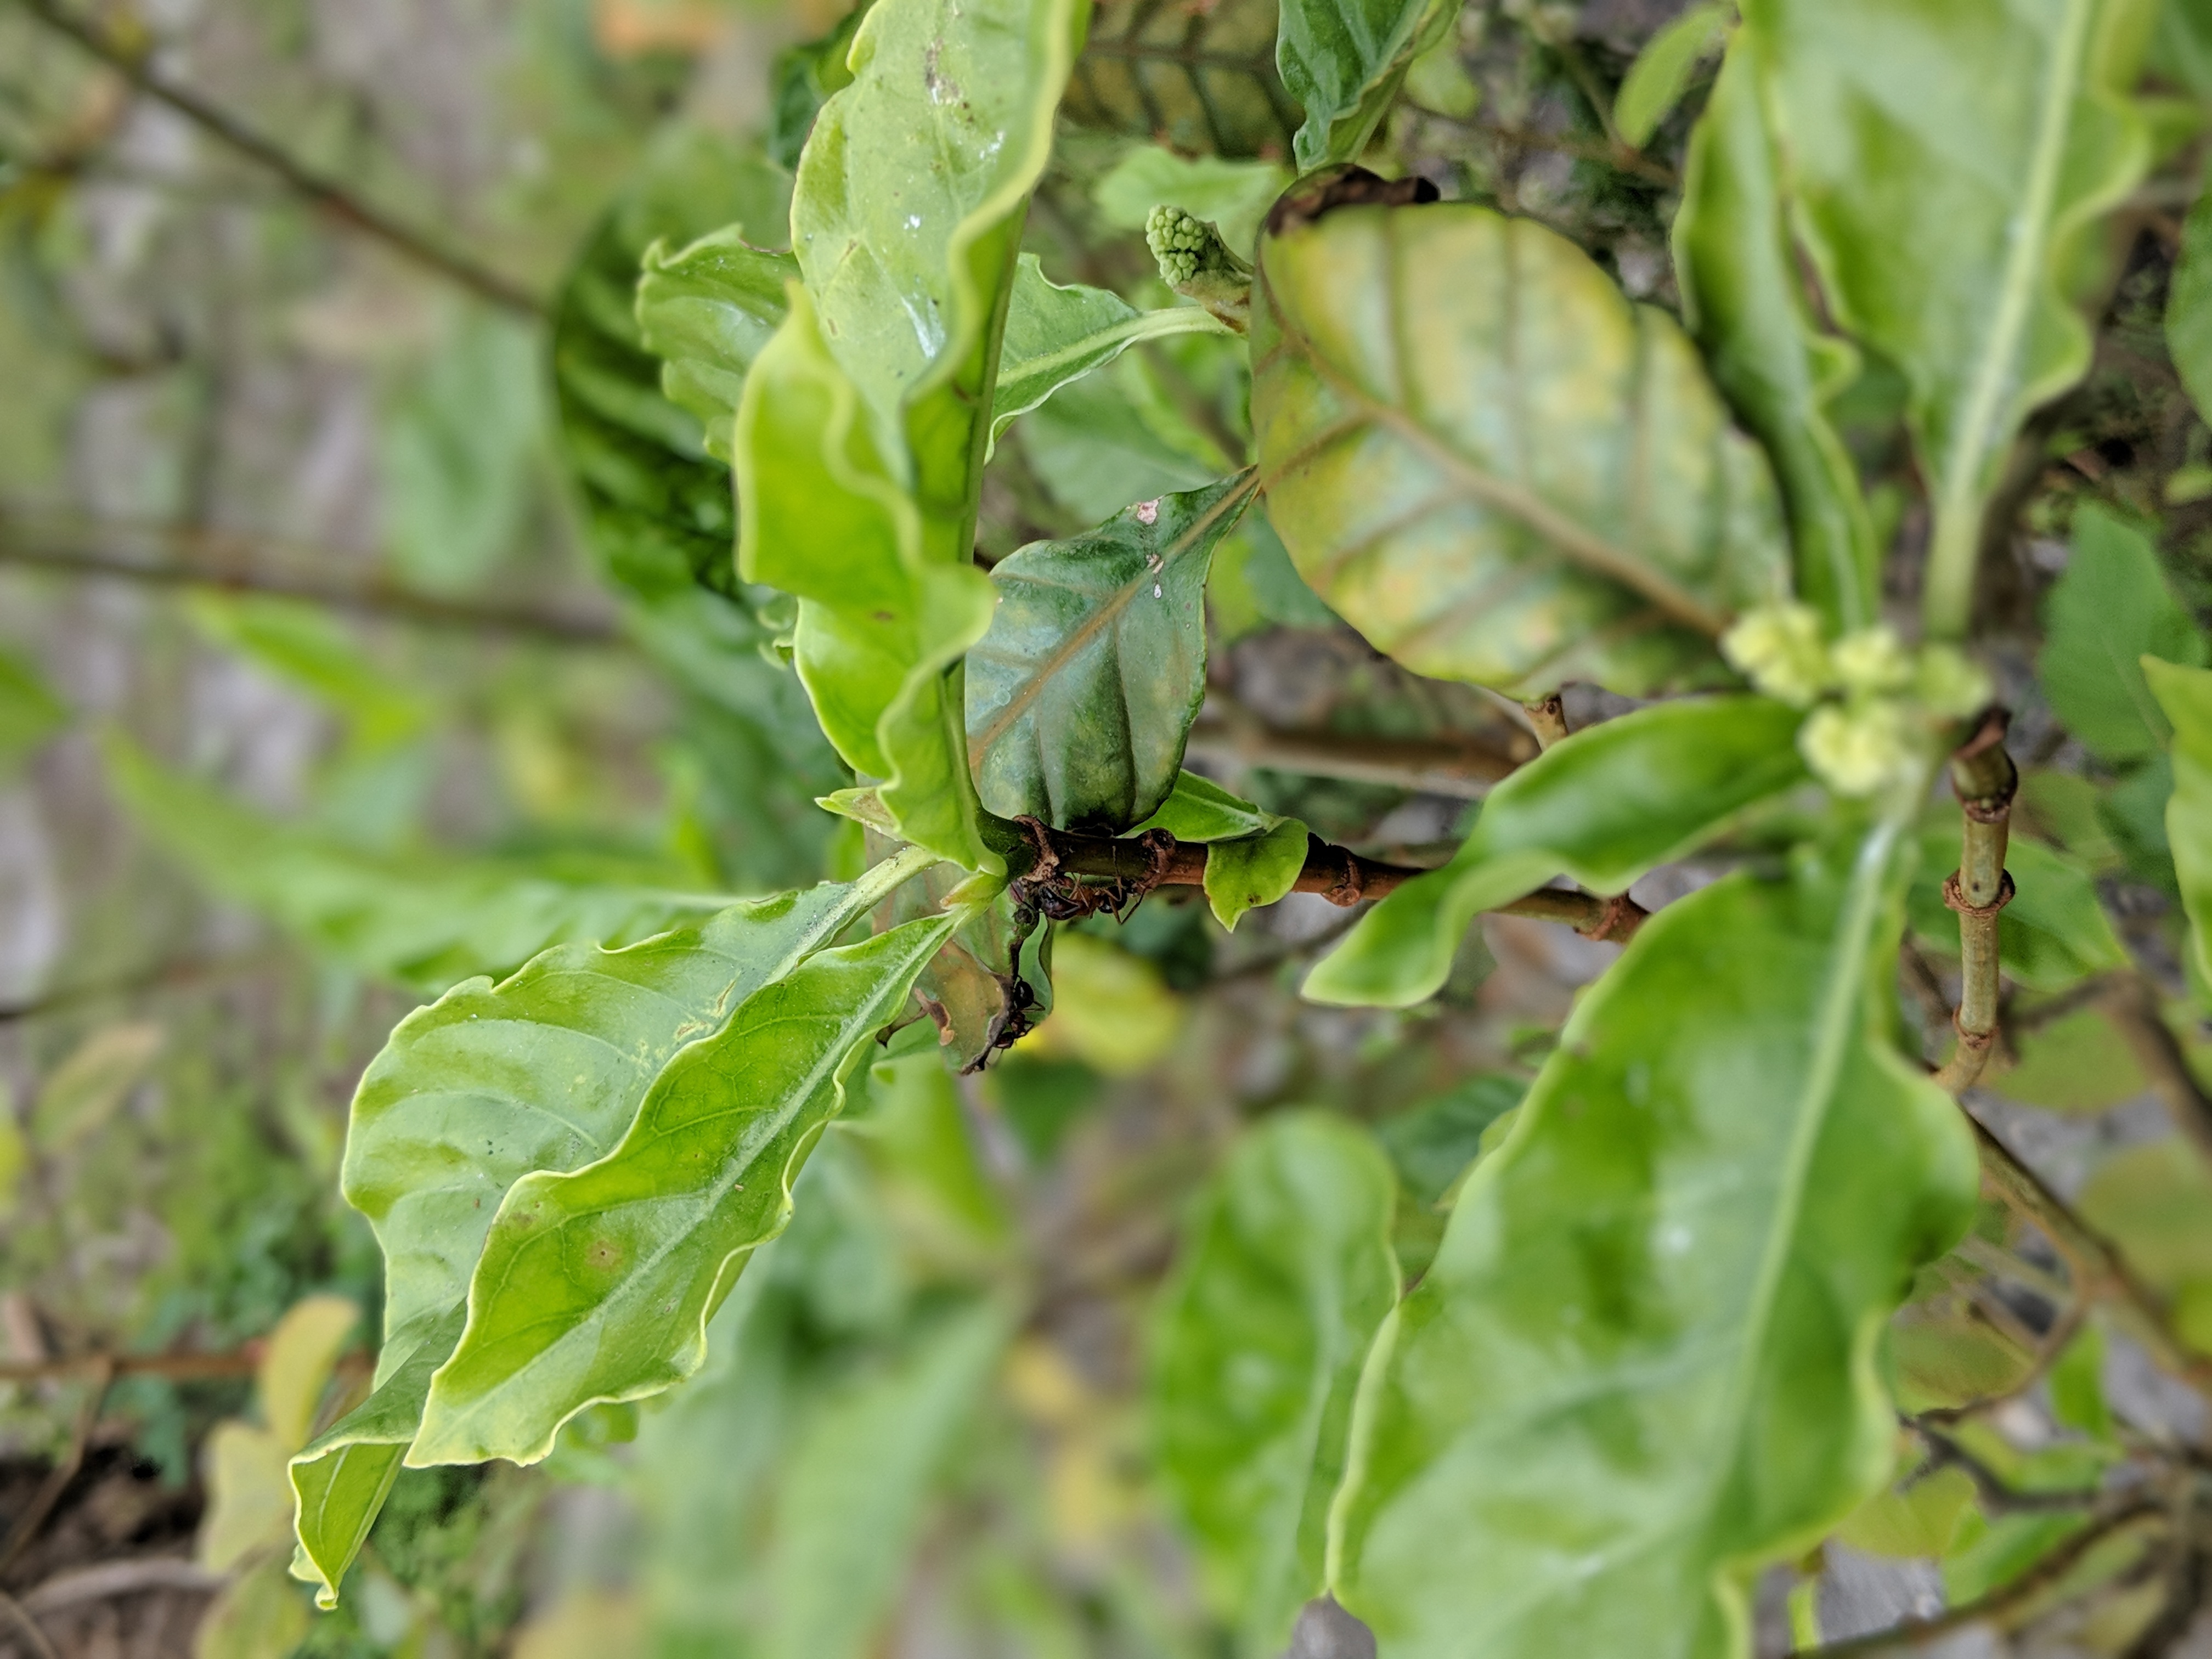 Picking tons of fresh p. Viridis leaf off the tree